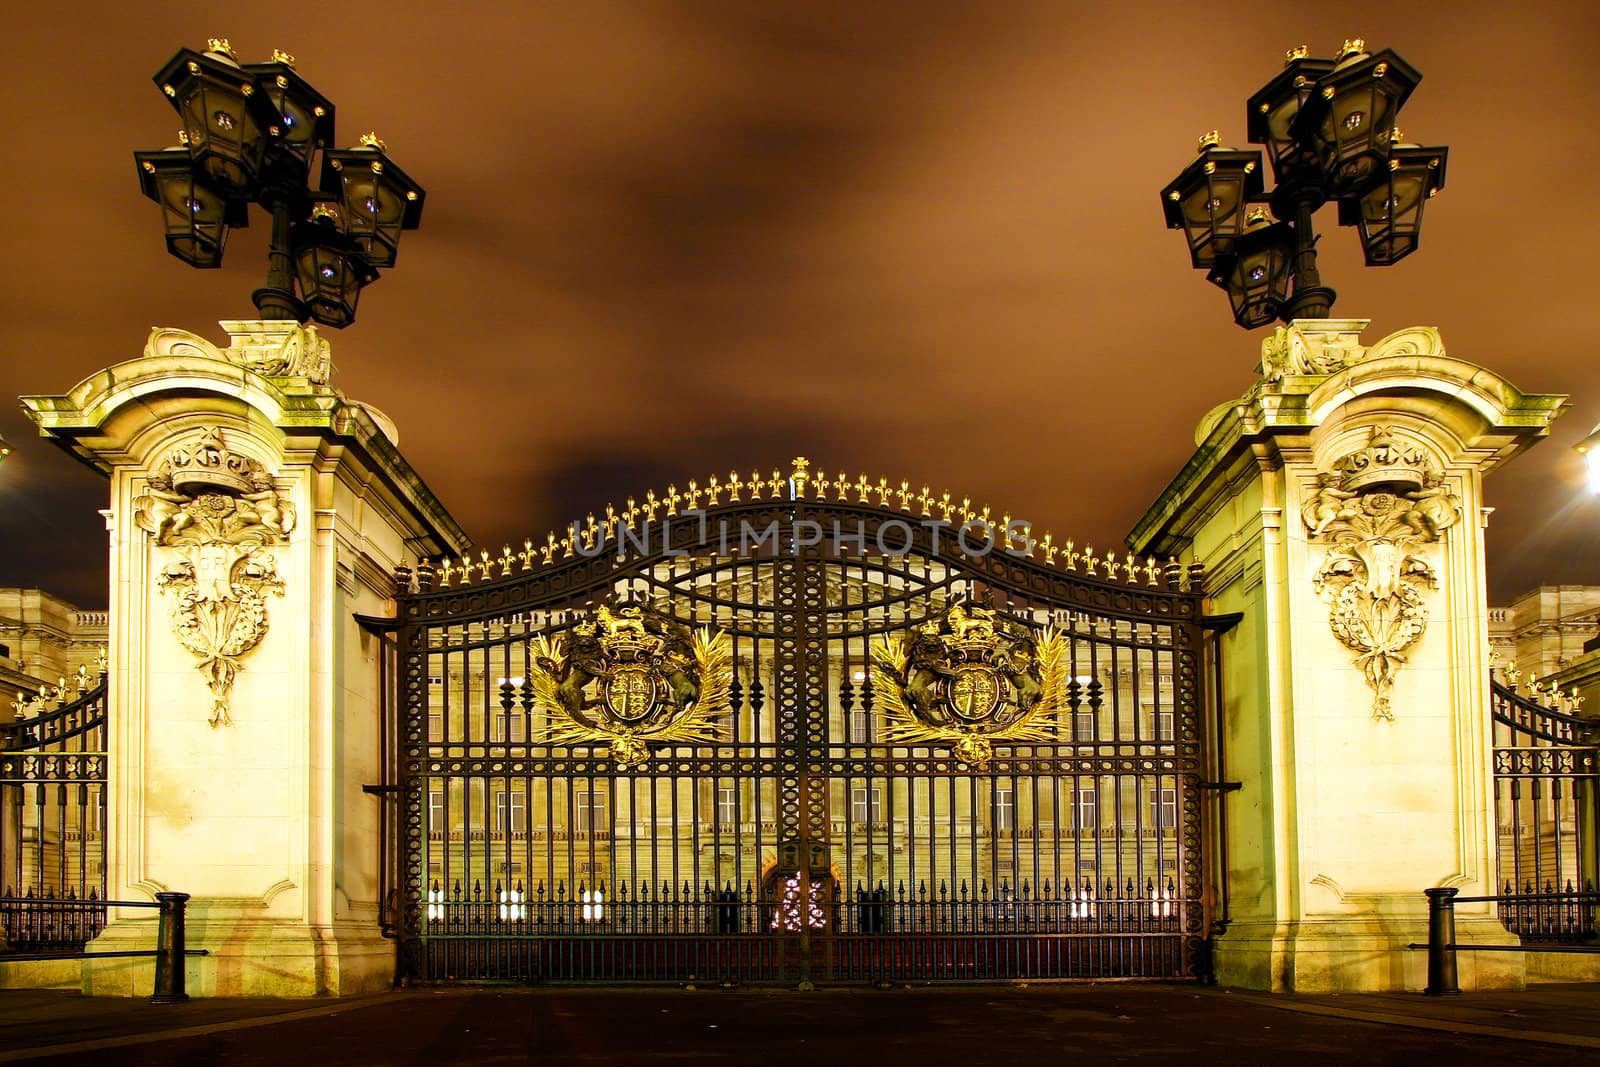 The gate by Imagecom